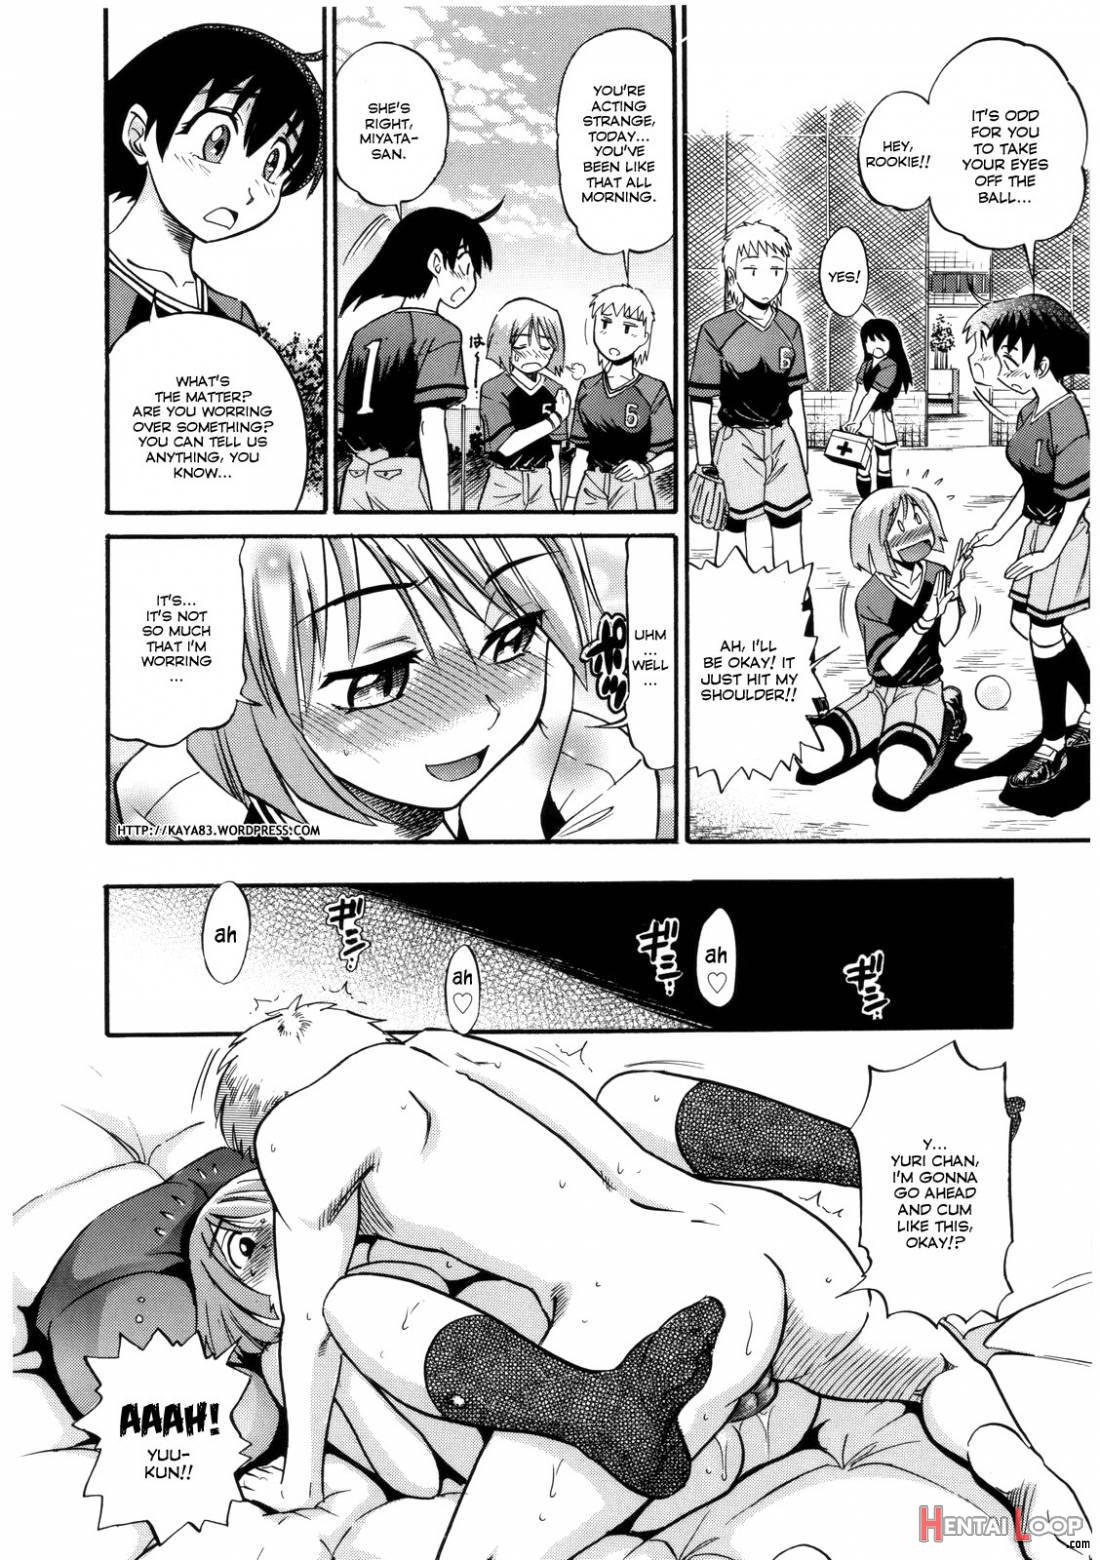 B-Chiku page 62